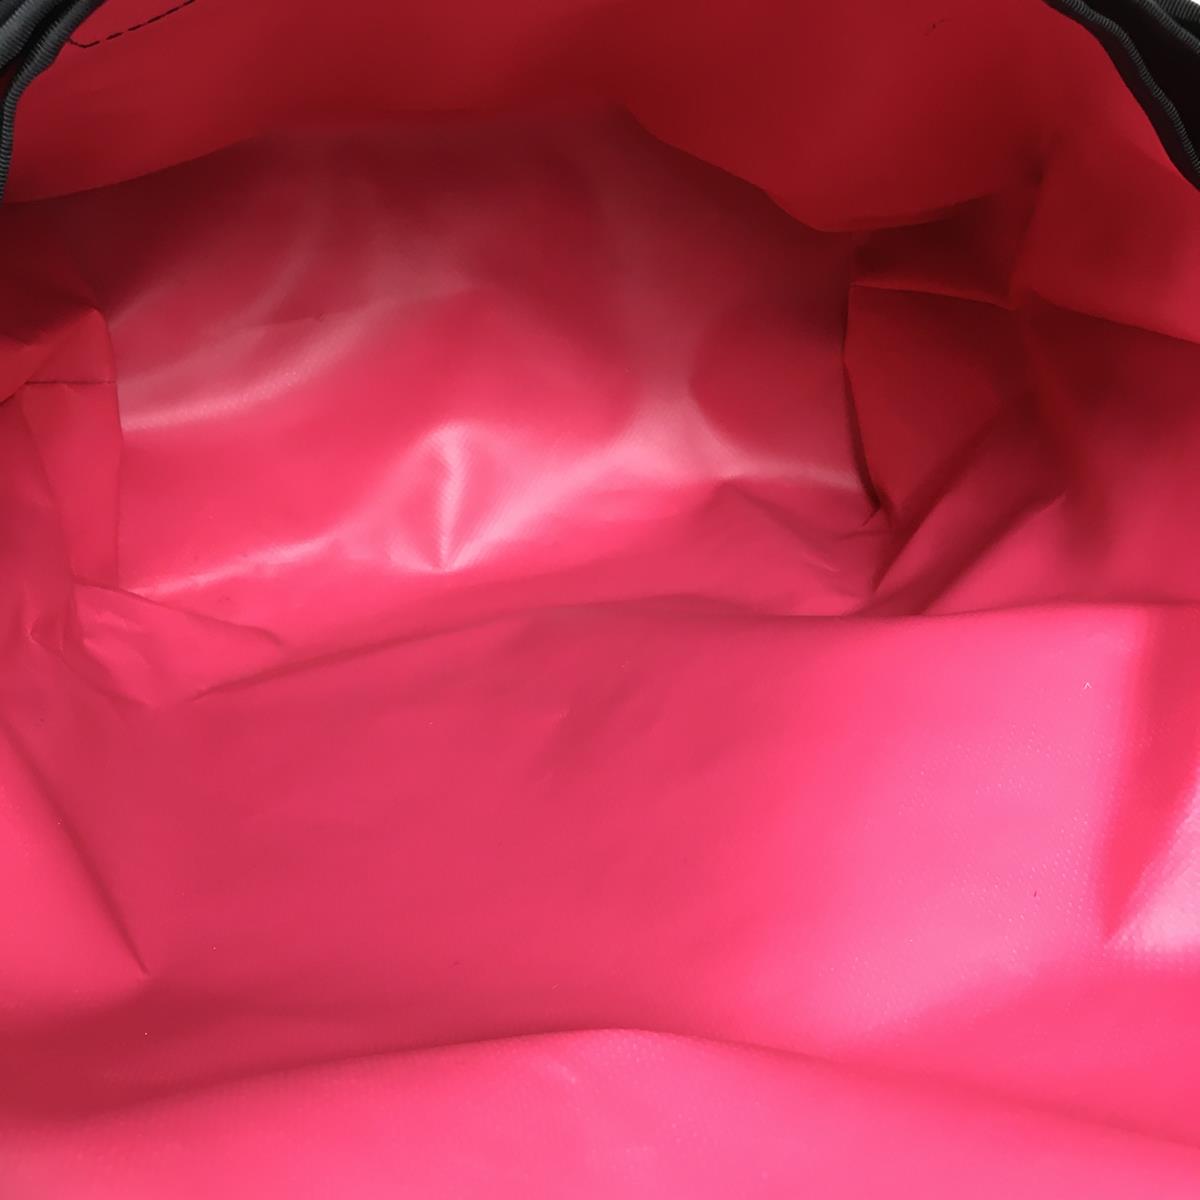 クローム ミニメトロ Mini Metro 20.5L メッセンジャーバッグ クーリエバッグ アメリカ製 コーデュラナイロン製 DJバッグ レコードバッグ CHROME Purple / Pink パープル系